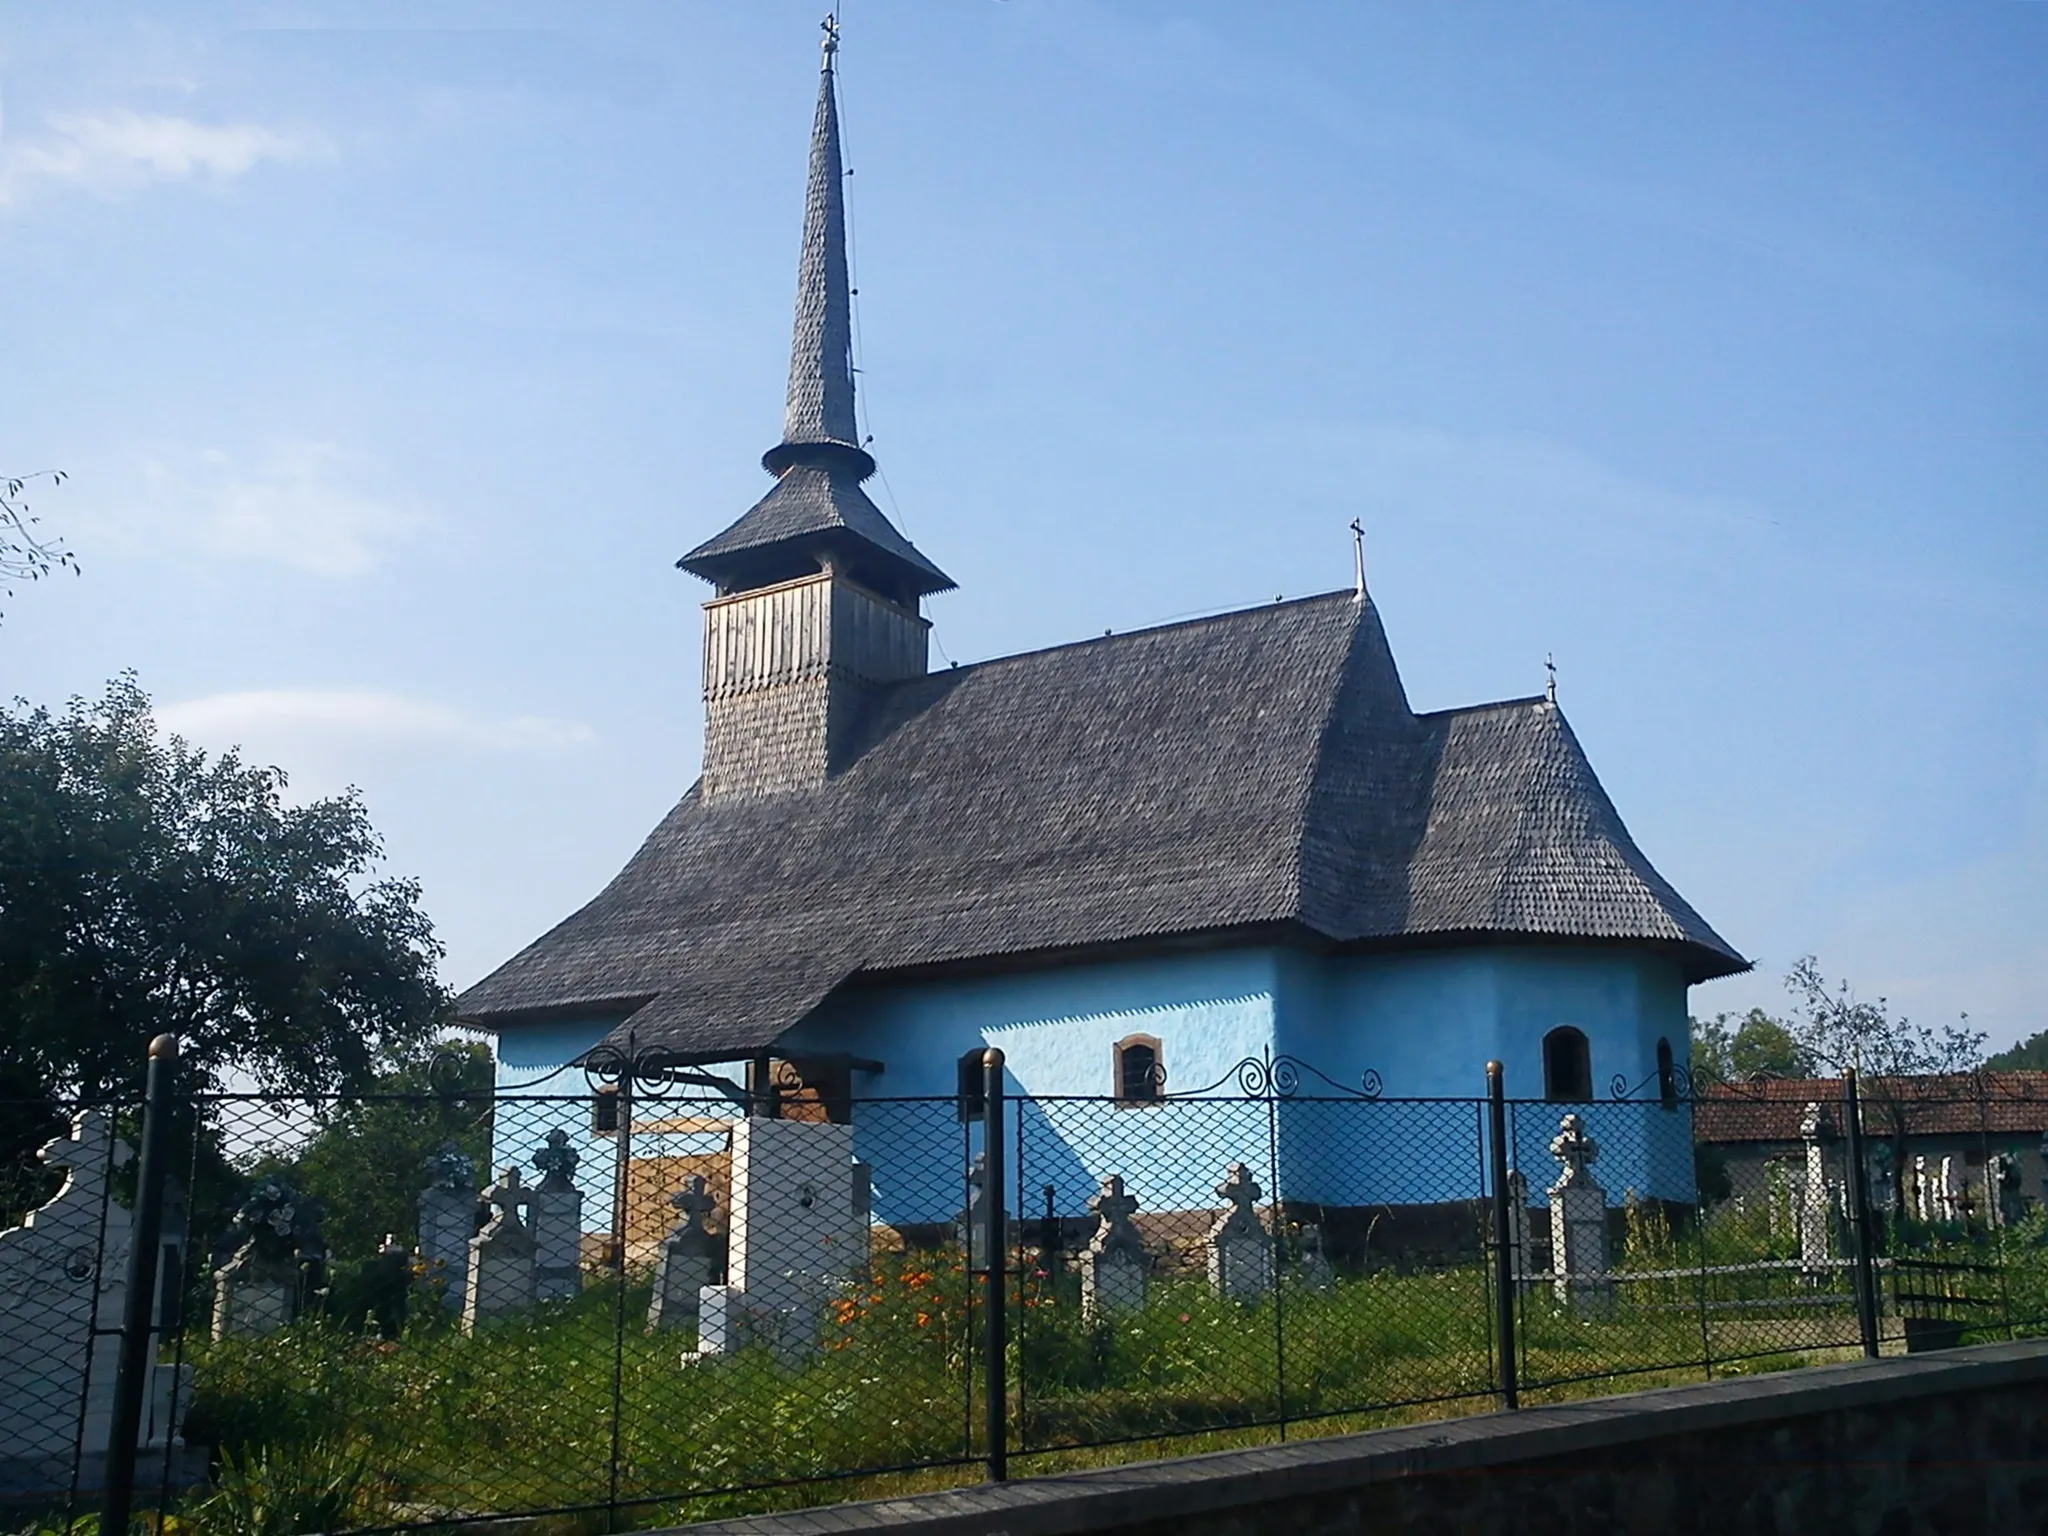 Photo showing: Biserica de lemn, realizata in sec. XVIII in satul Fânaţe, comuna Câmpani, jud. Bihor, Romania
Biserica inca mai pastreaza pictura de interior originala, aceasta fiind intr-o stare destul de precara.